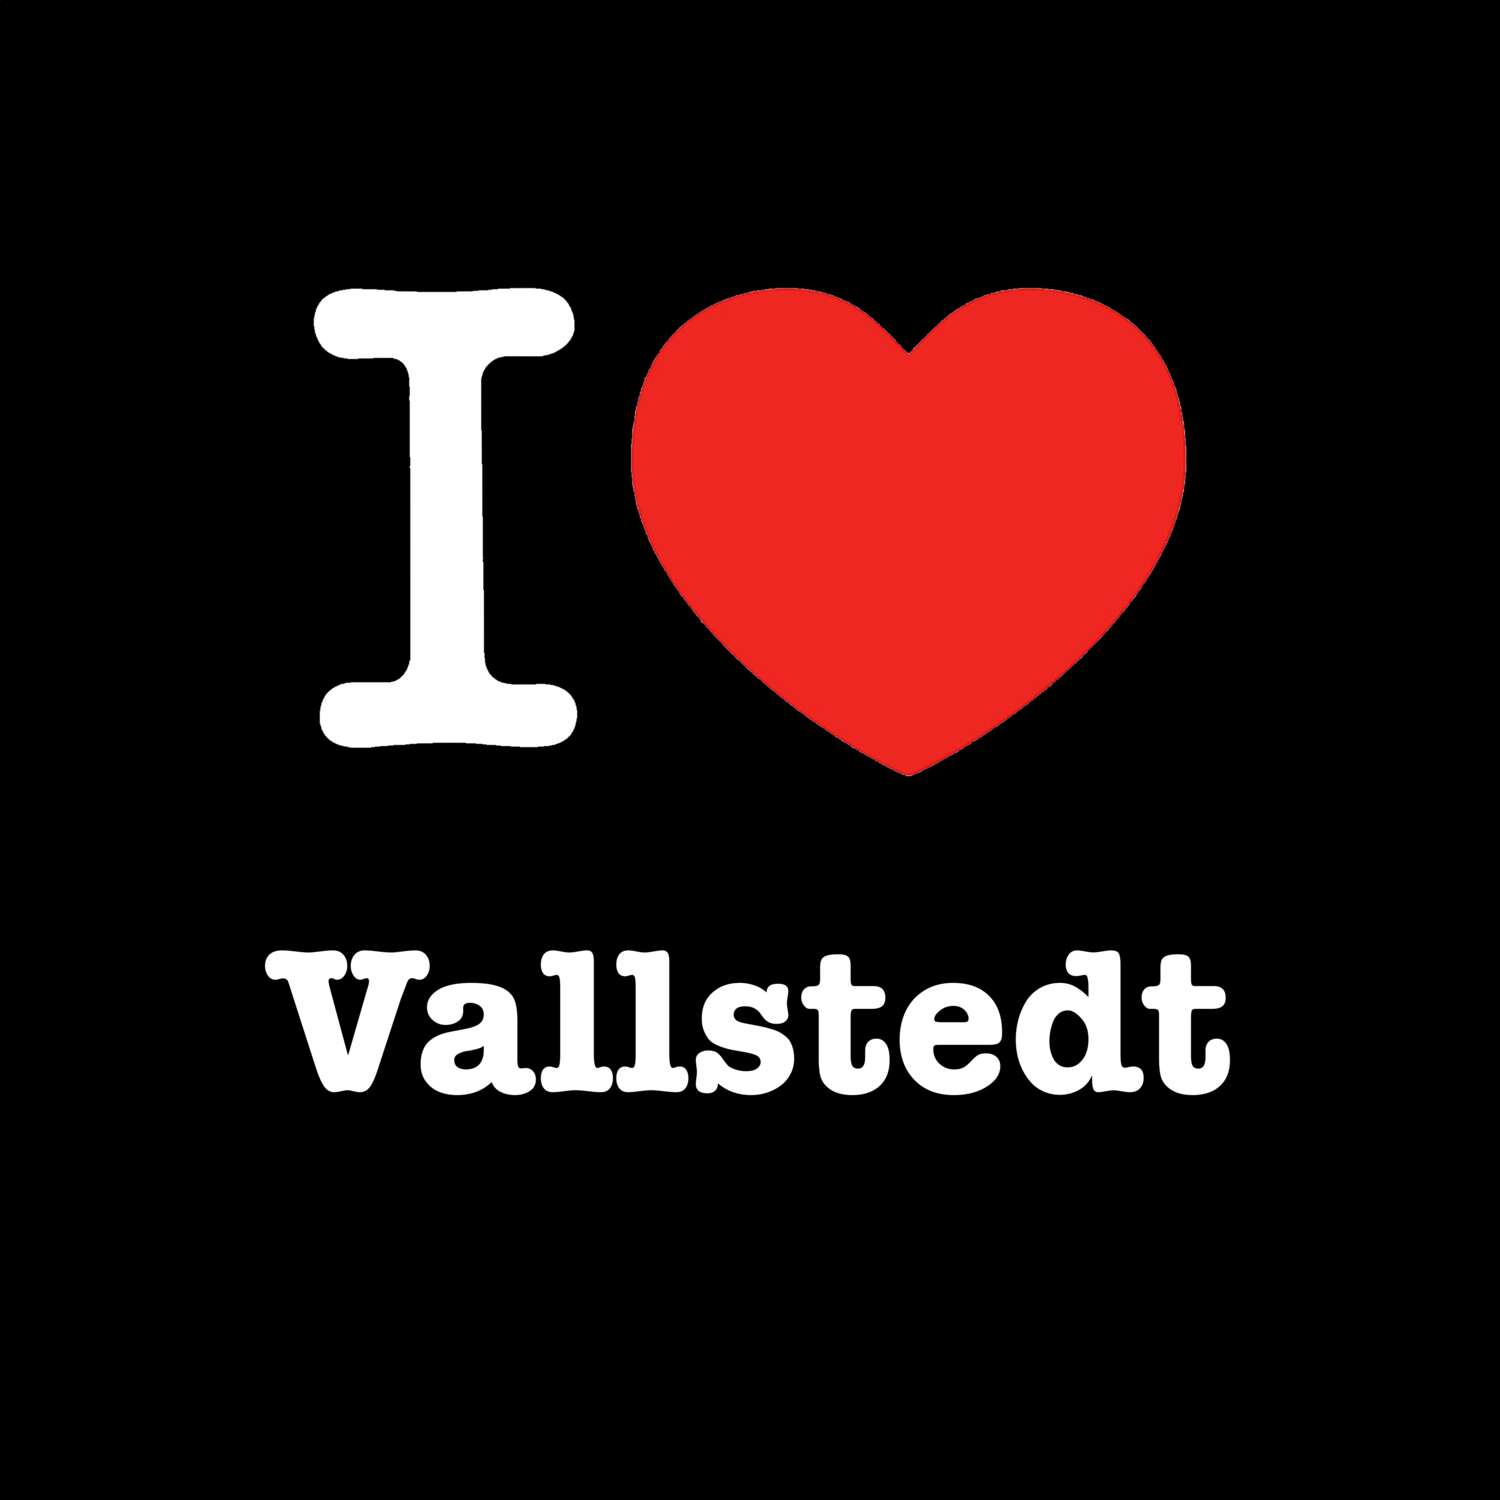 Vallstedt T-Shirt »I love«